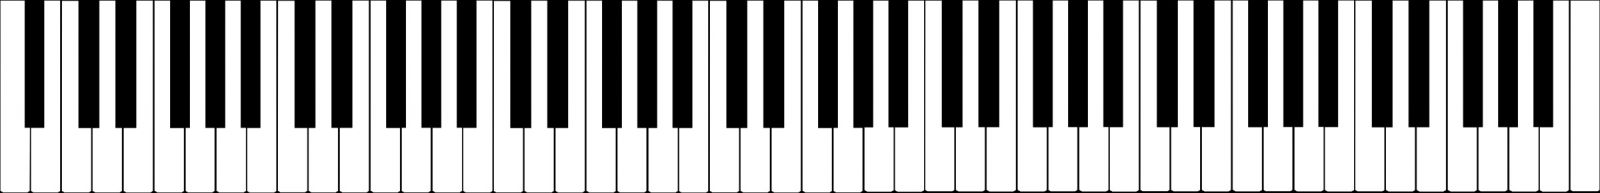 7 BƯỚC DÀNH CHO NGƯỜI HỌC PIANO